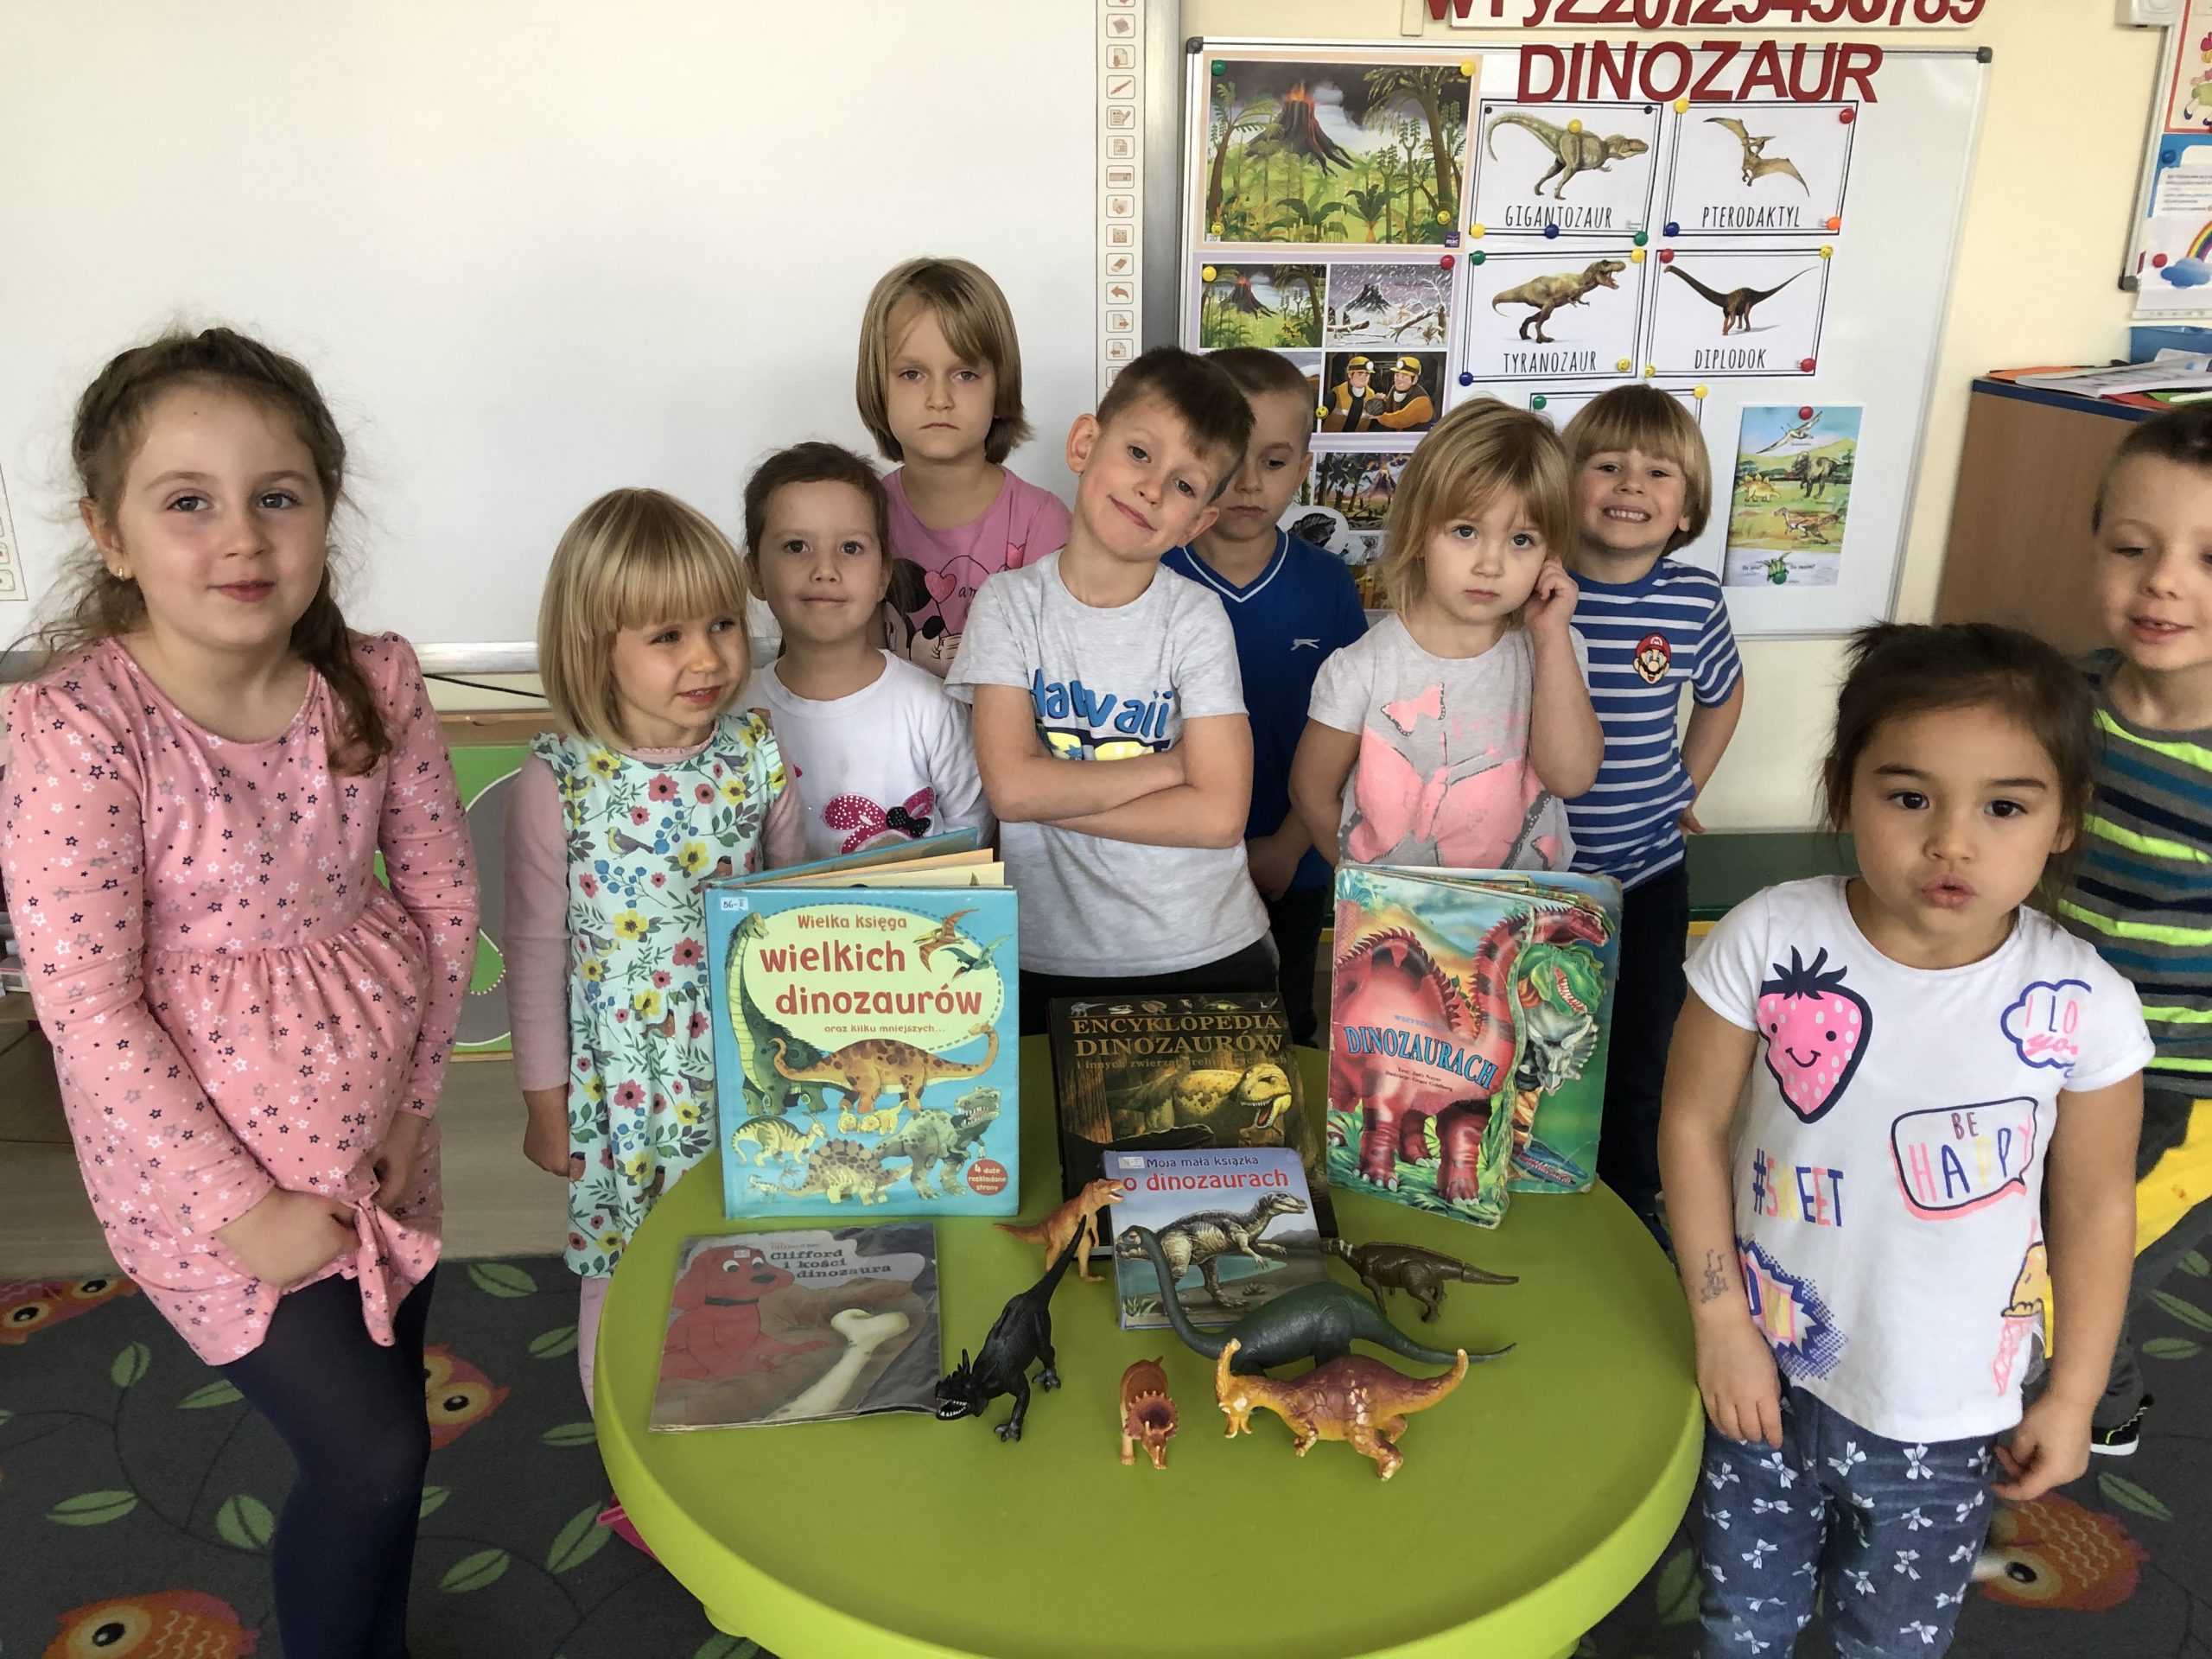 Dzieci stojący w grupie. Przed nimi na stoliku znajdują się książki o tematyce dinozaurów oraz figurki dinozaurów.